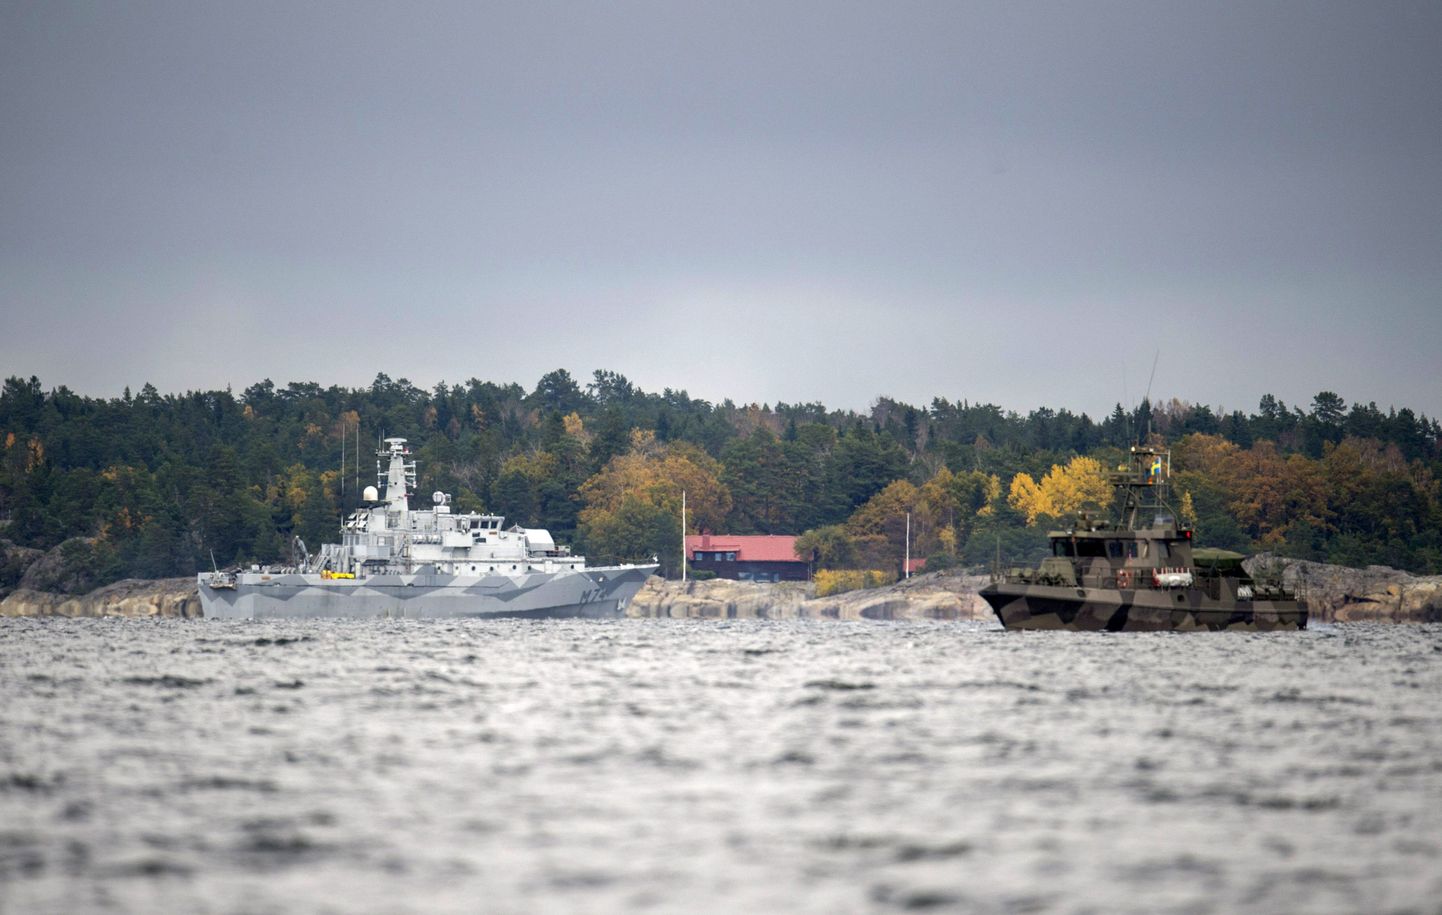 Rootsi miinijahtija HMS Kullen (vasakul) ja patrull-laev Nämdö lahes.